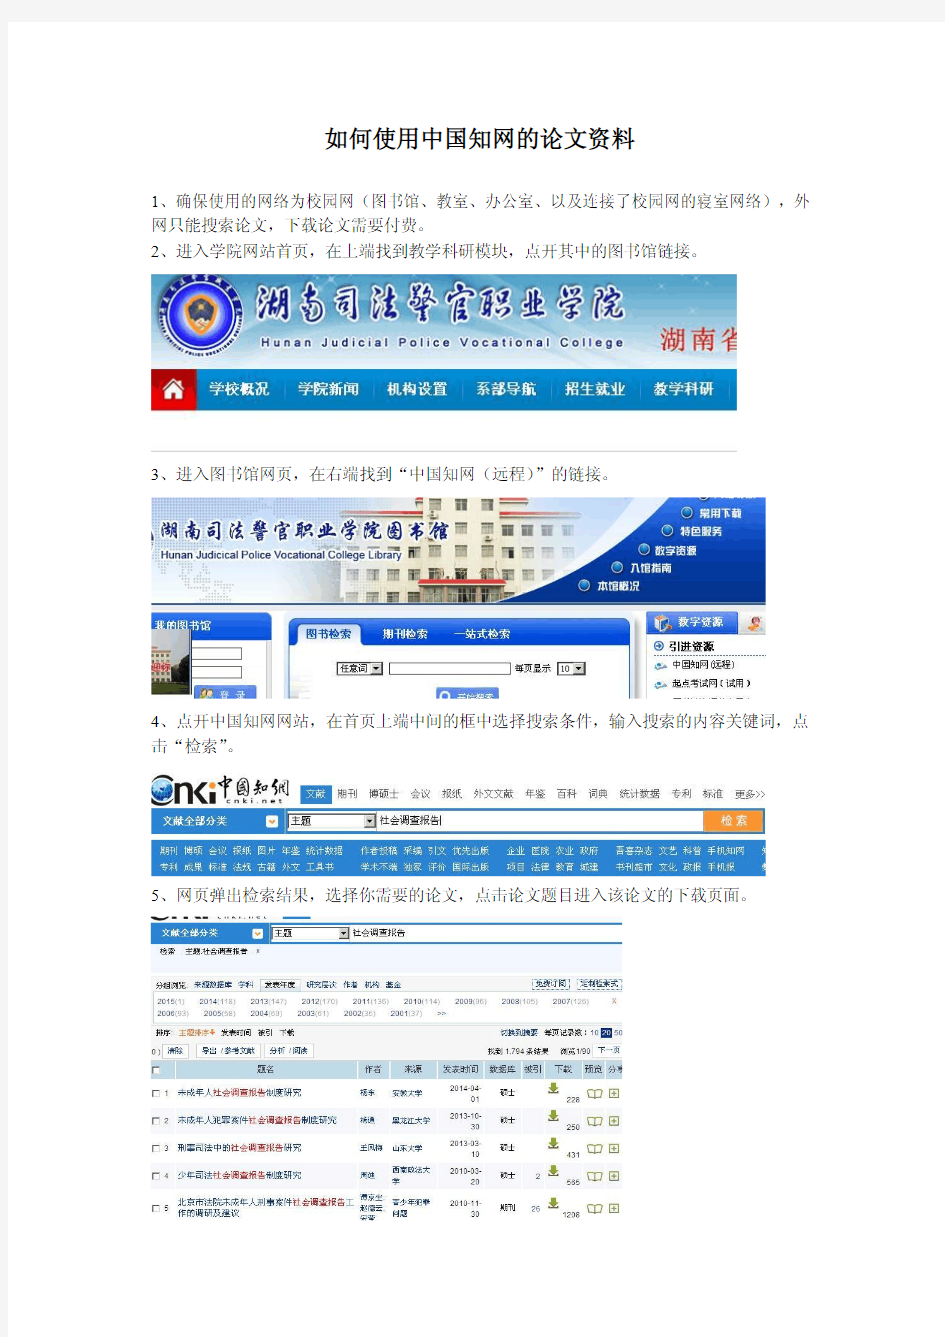 大学生如何在校园网上使用中国知网的论文资料